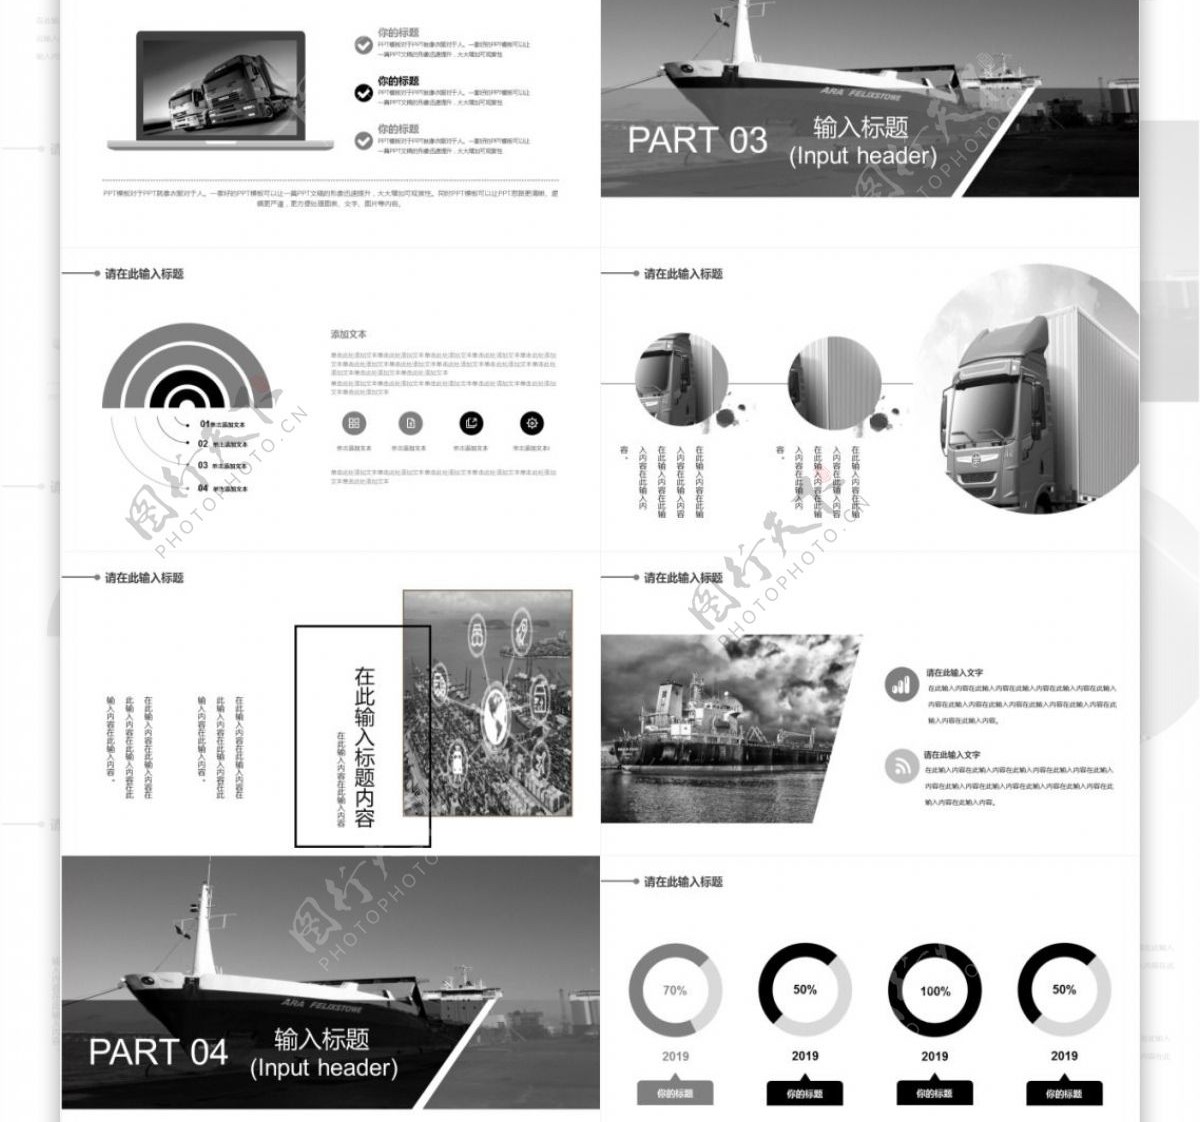 杂志风运输业项目计划书免费PPT模板设计